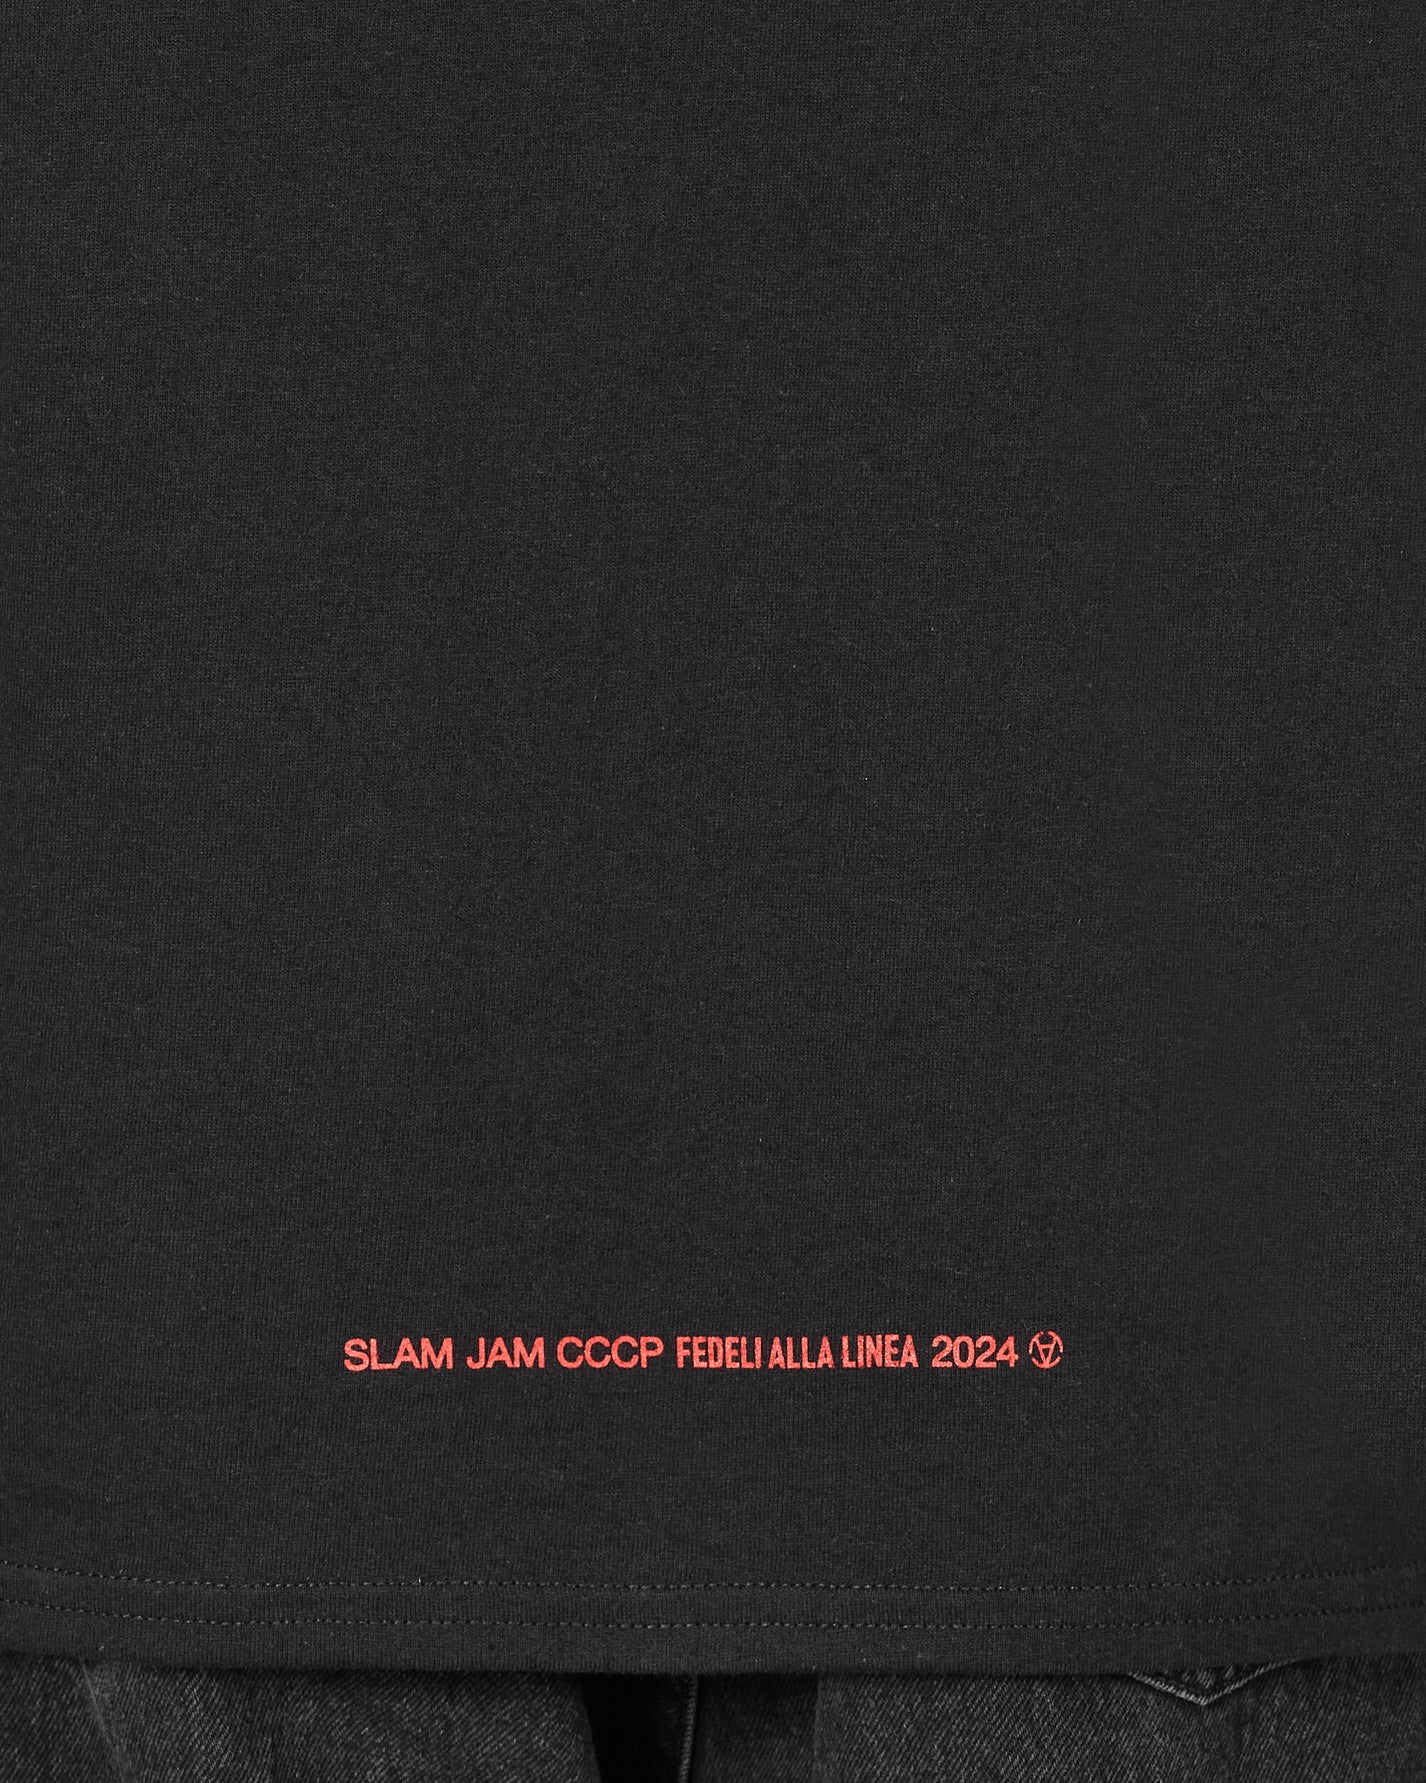 Slam Jam Cccp Amandoti T-Shirt Black T-Shirts Shortsleeve SFCCCPAMAT 2